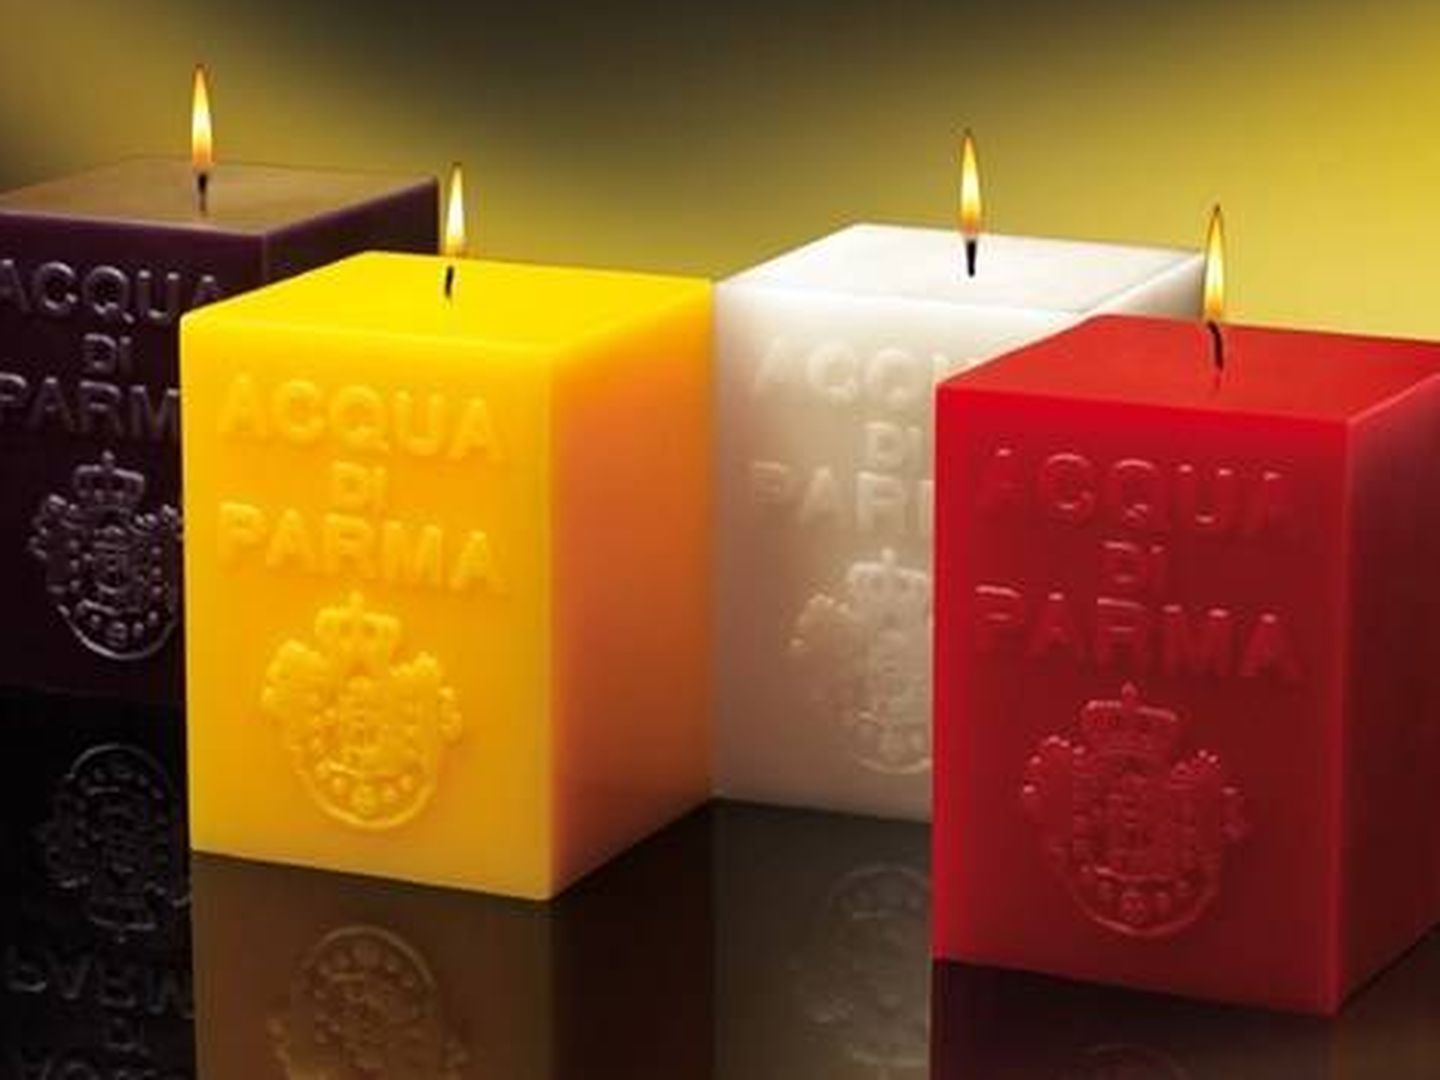 Las velas de Acqua di Parma son auténticas joyas olfativas.